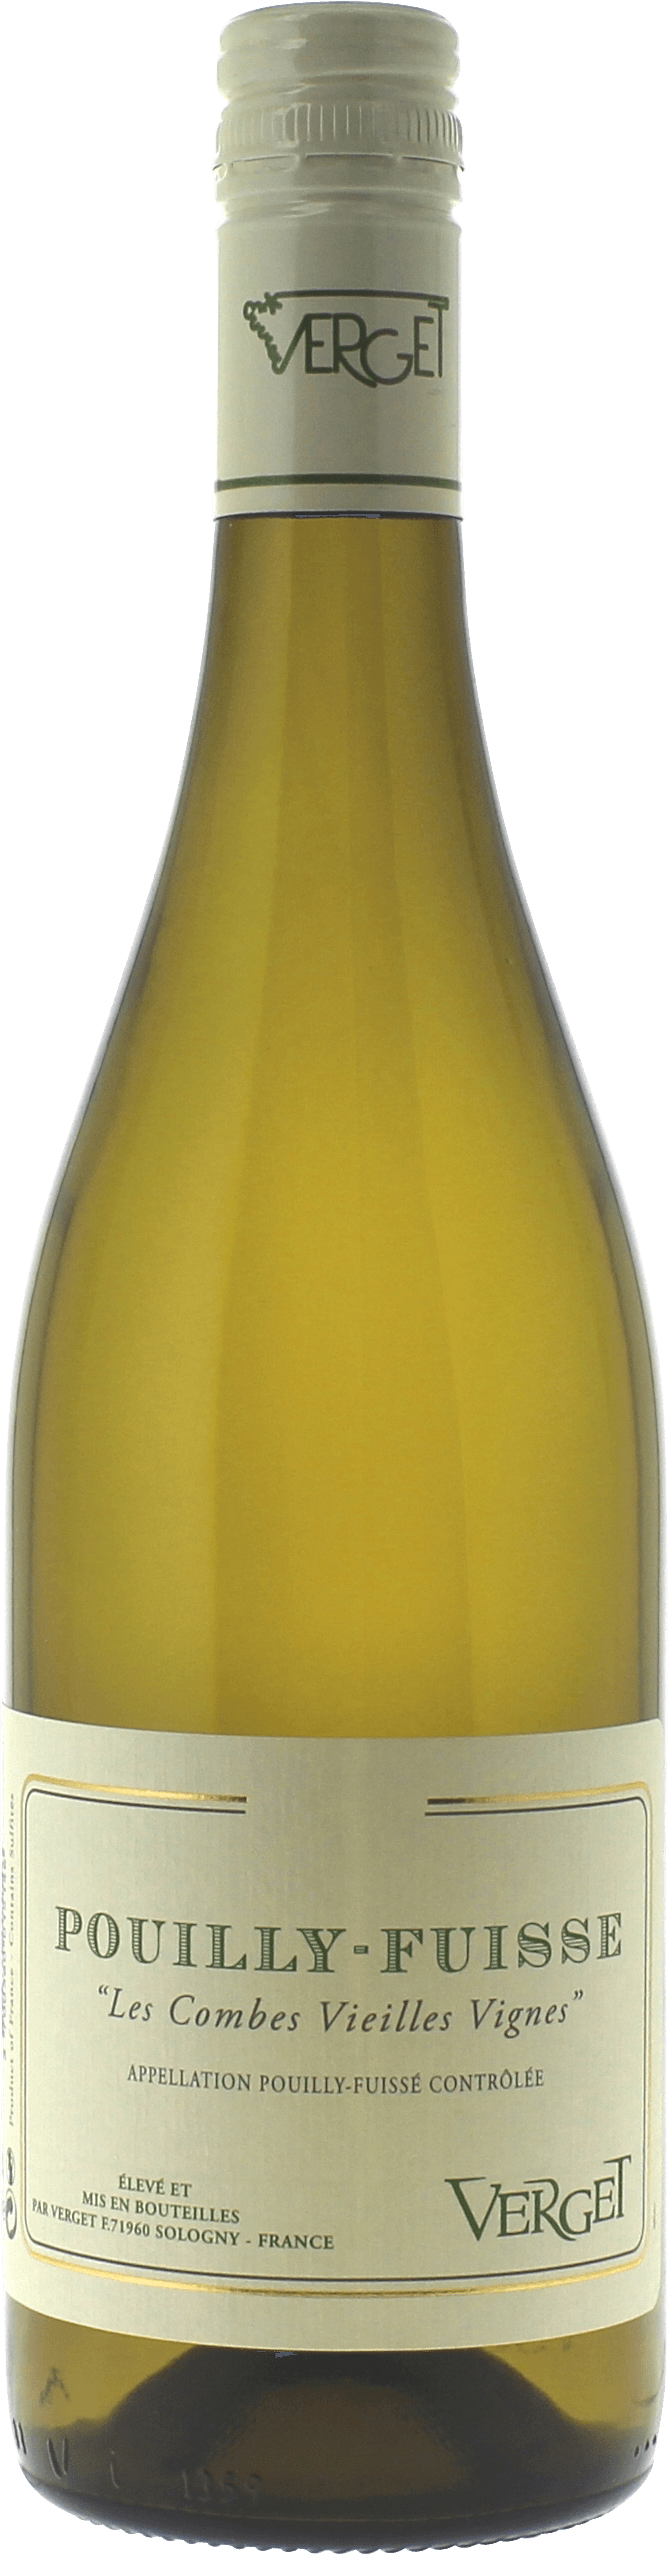 Pouilly fuiss les combes vieilles vignes 2015  VERGET, Bourgogne blanc